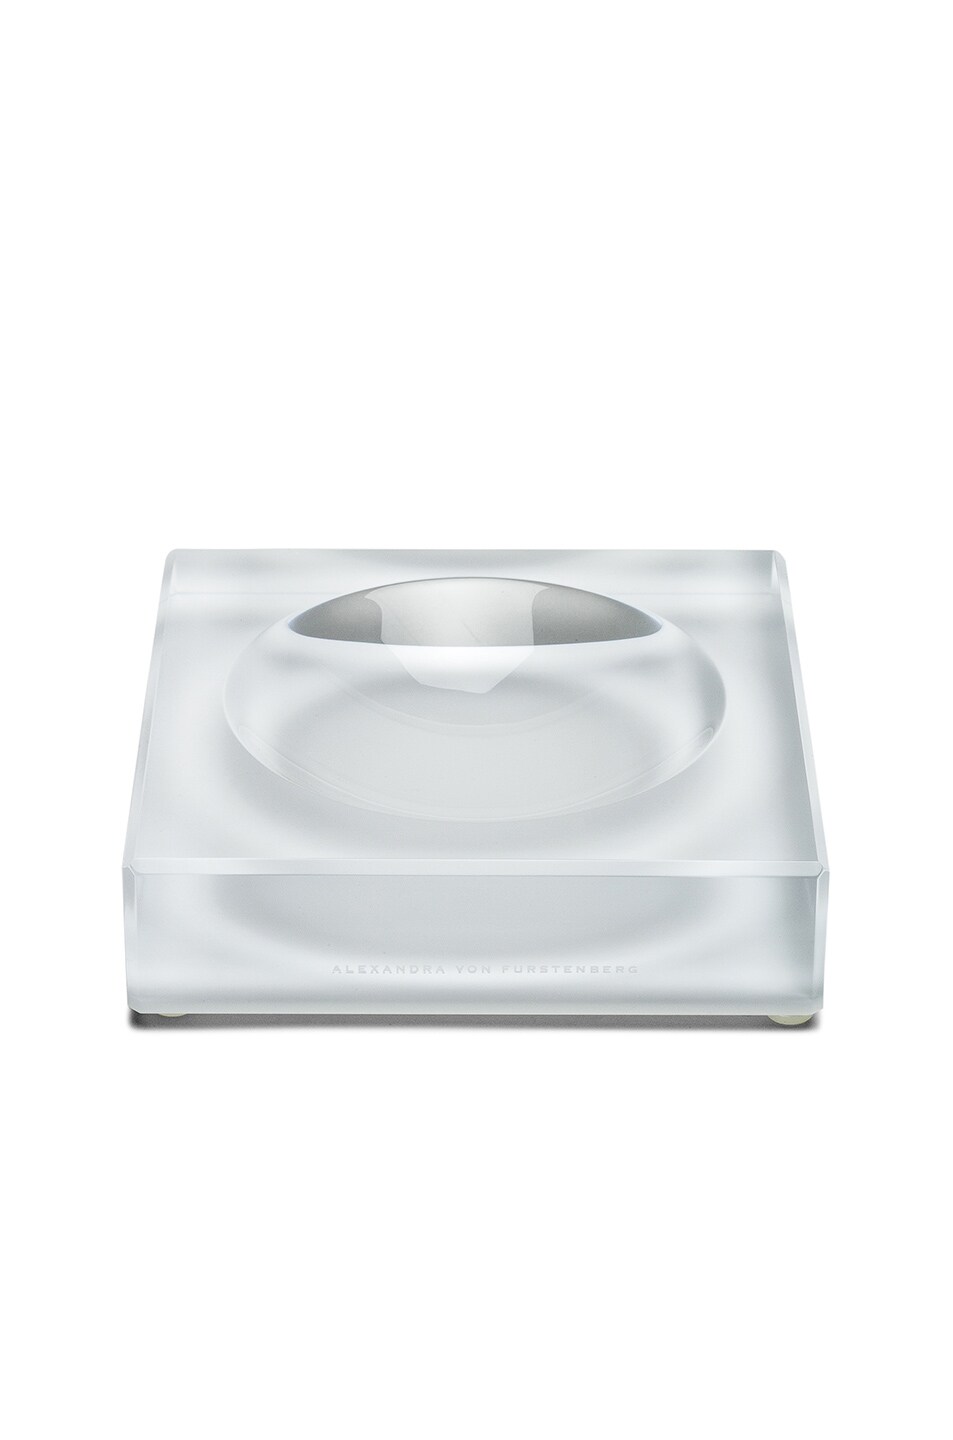 Image 1 of Alexandra Von Furstenberg Voltage Candy Bowl in White